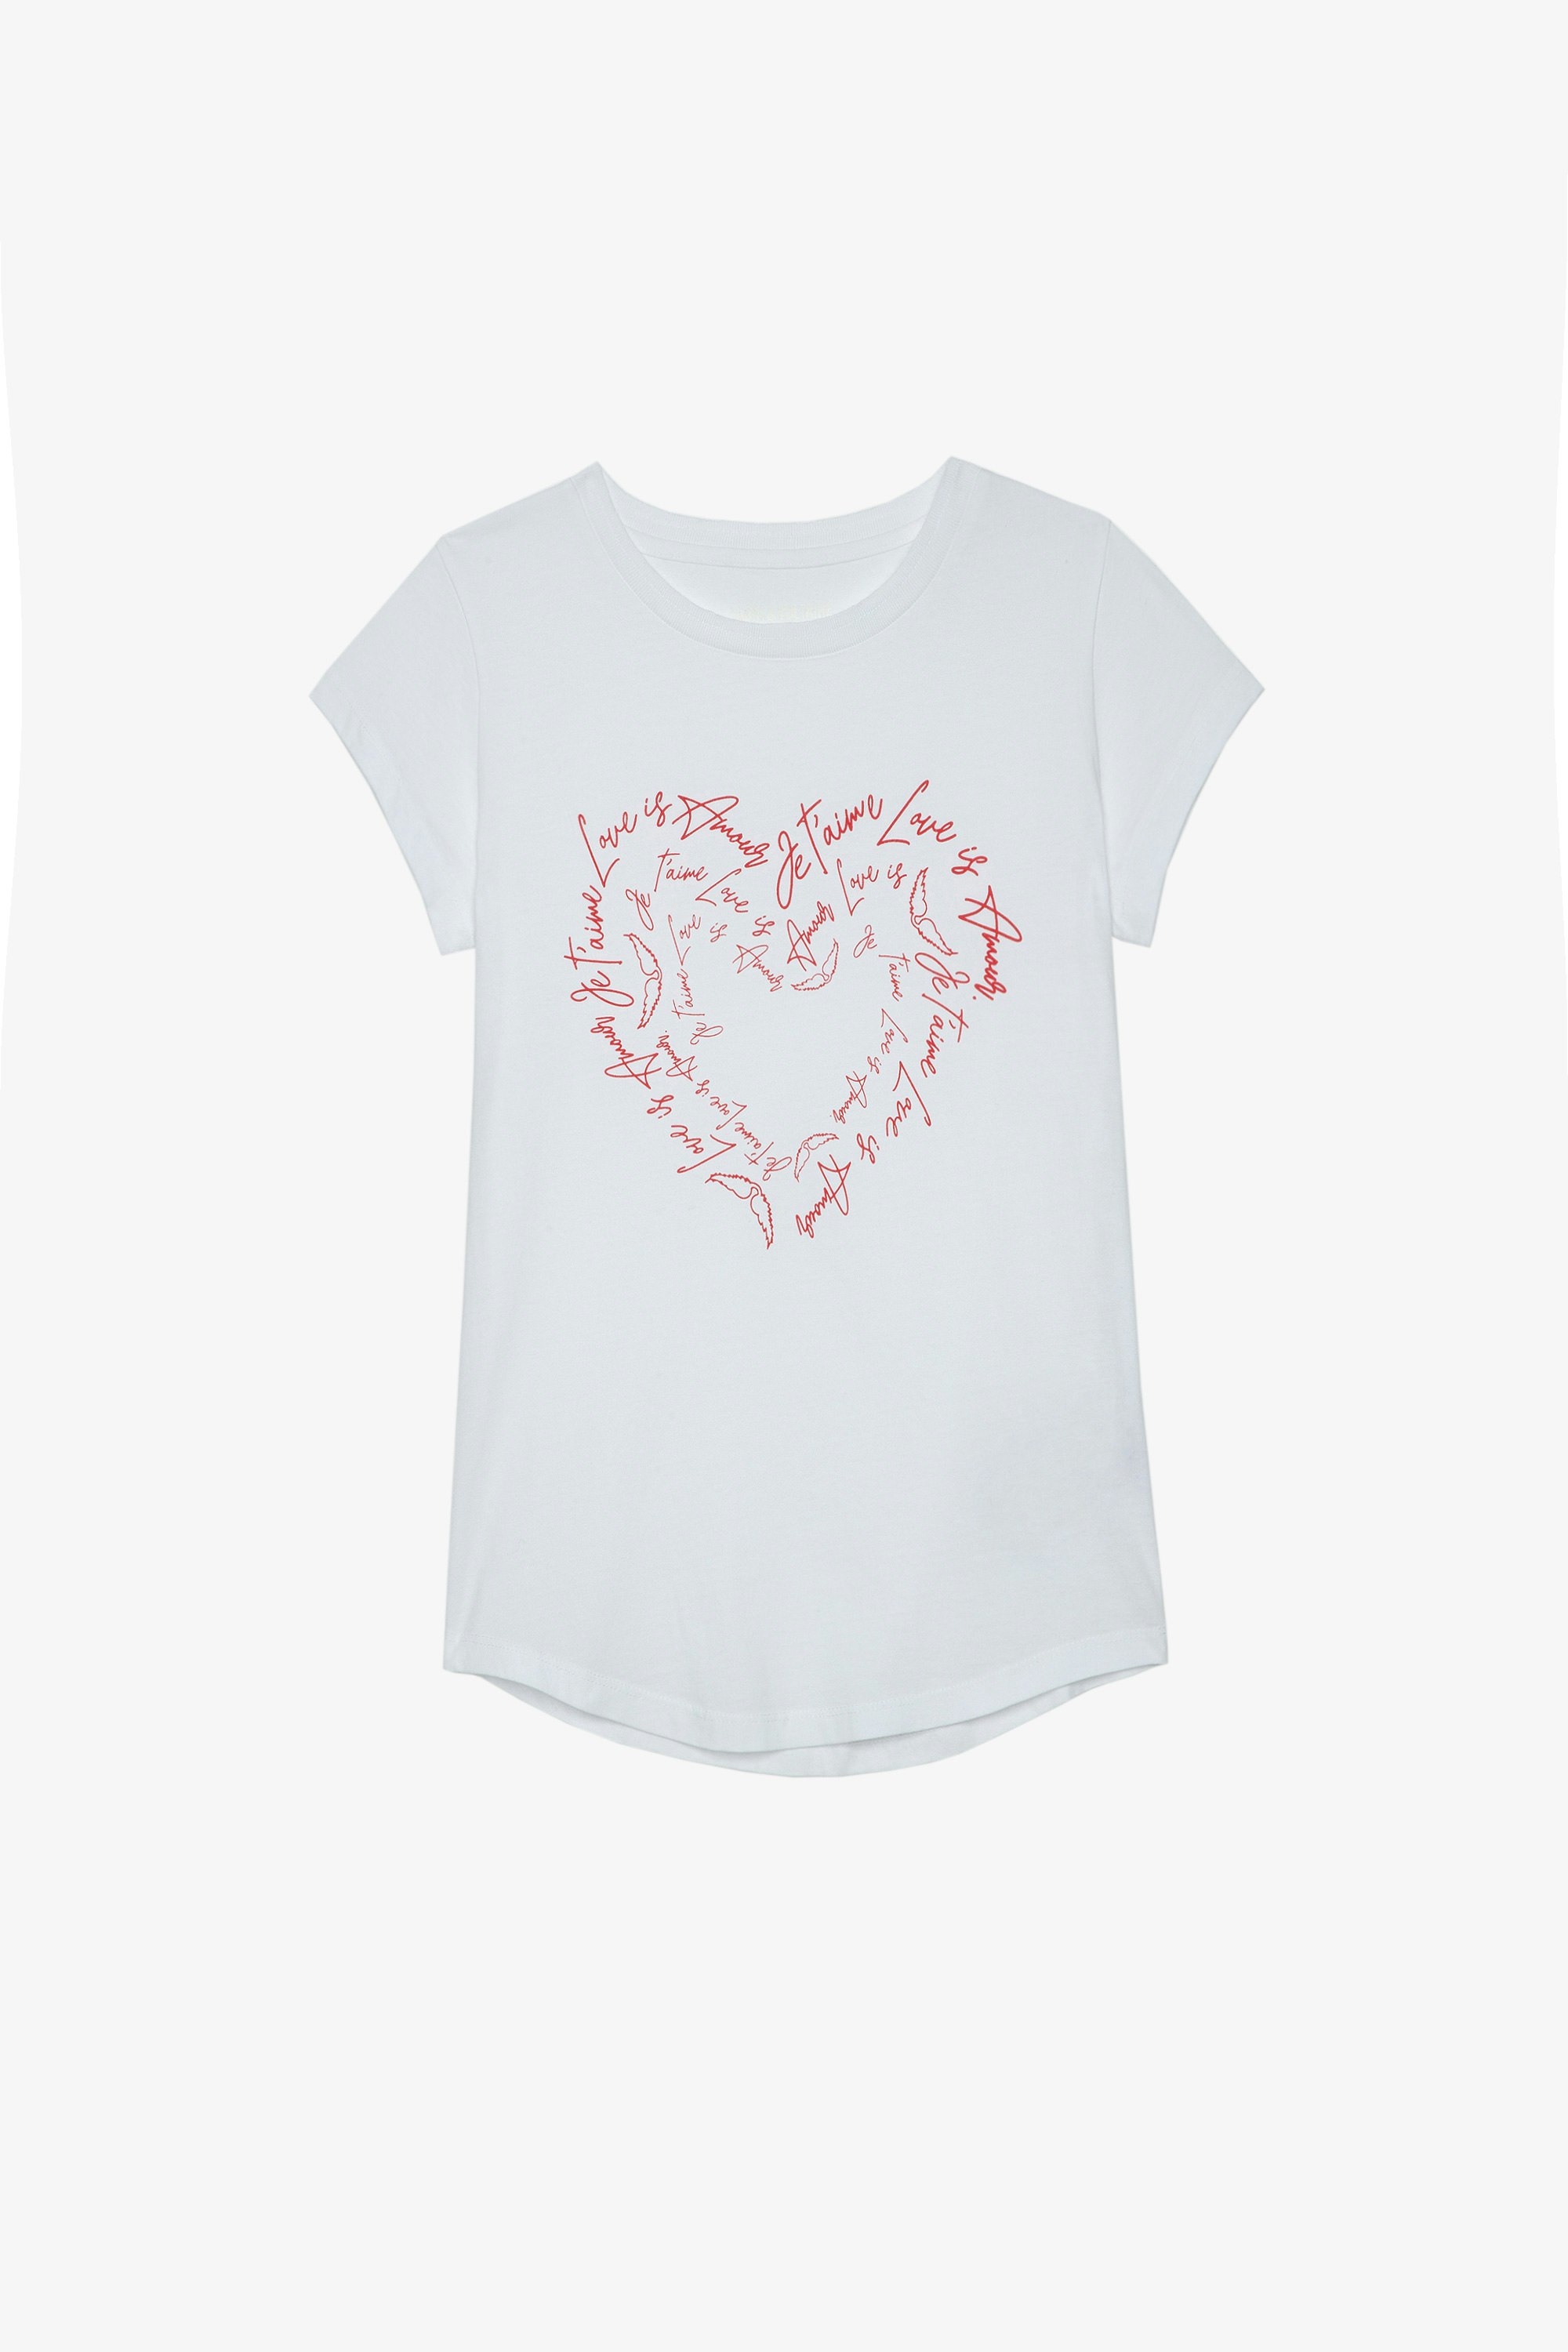 Camiseta Skinny Heart Camiseta de algodón blanco con mensajes de amor en forma de corazón y cristales